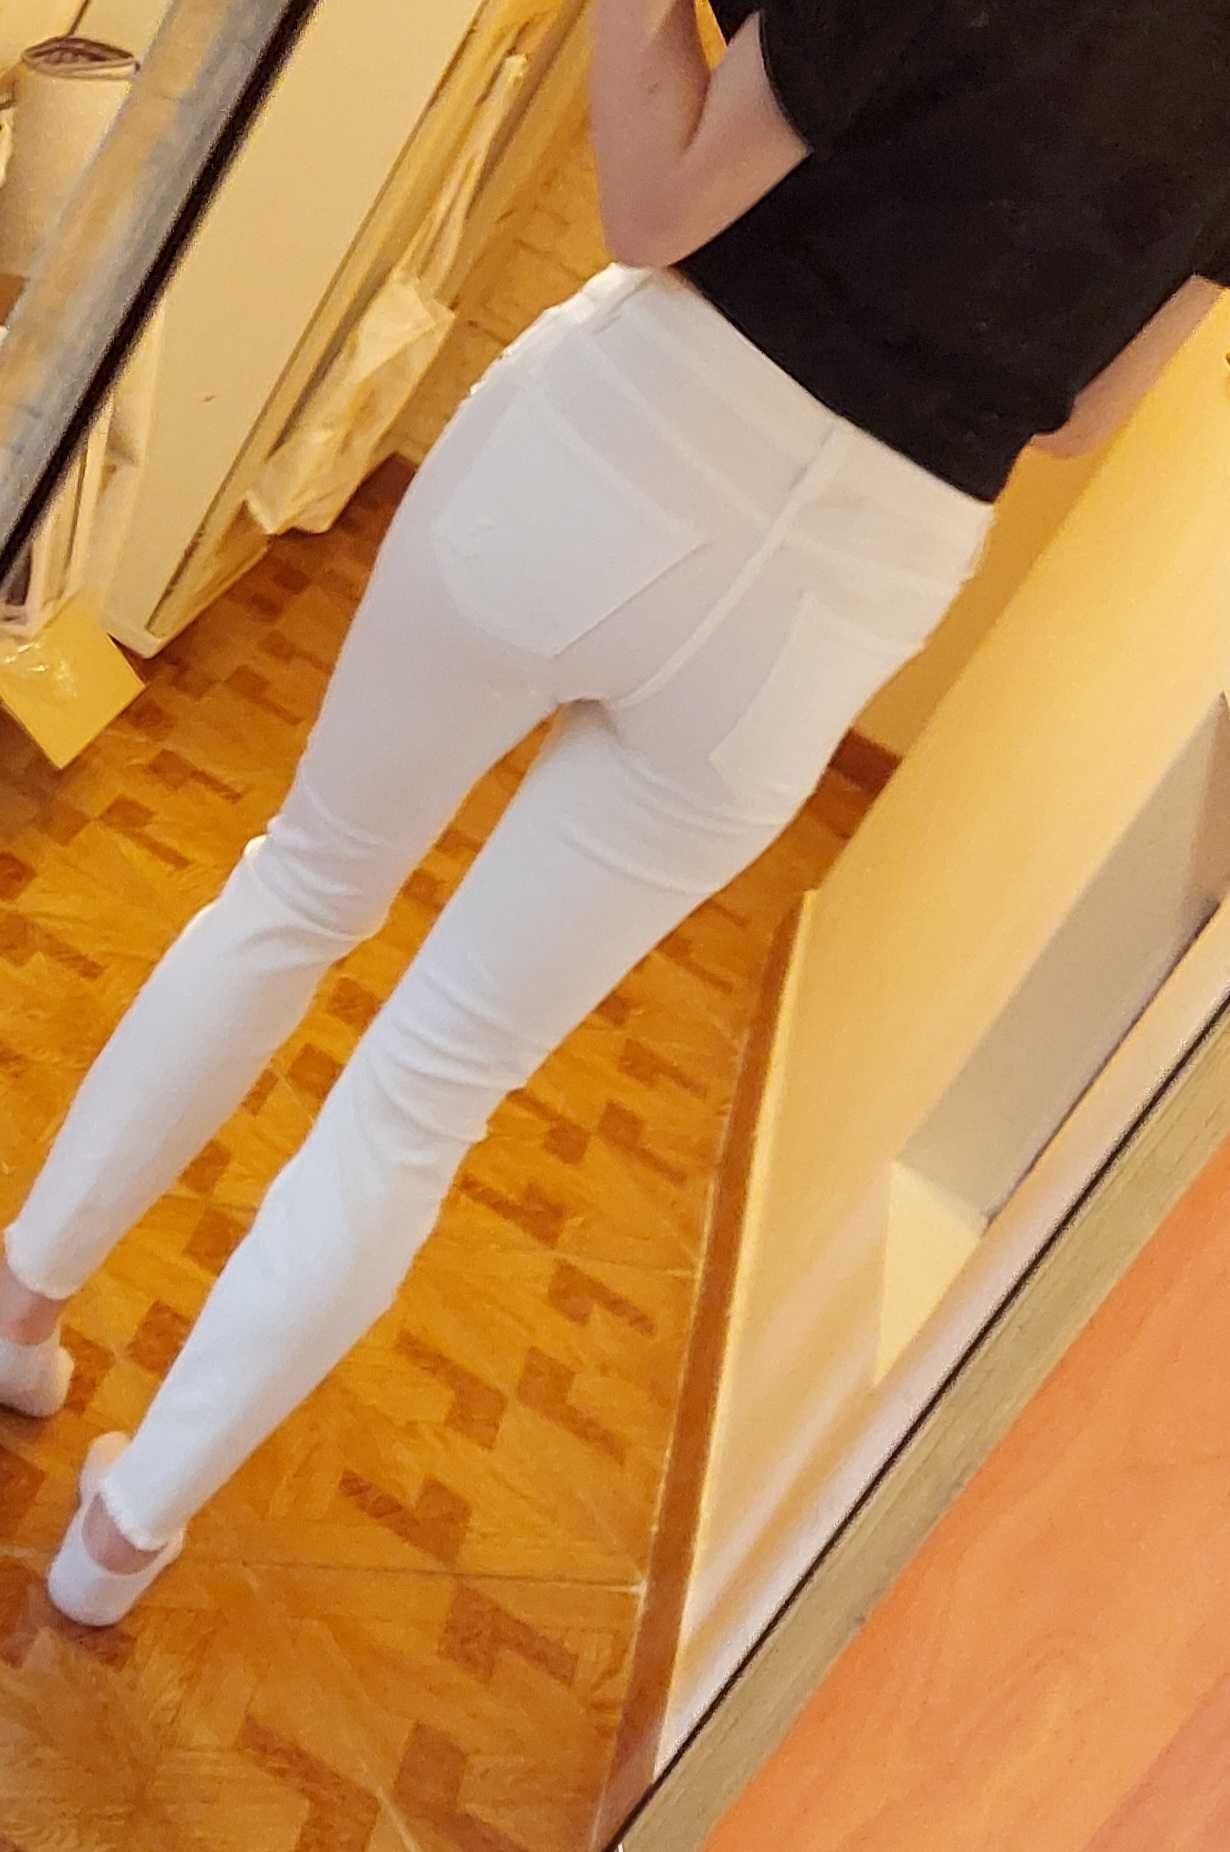 Jeansy slim, białe, rozmiar 36, nowe, bawełna i wiskoza